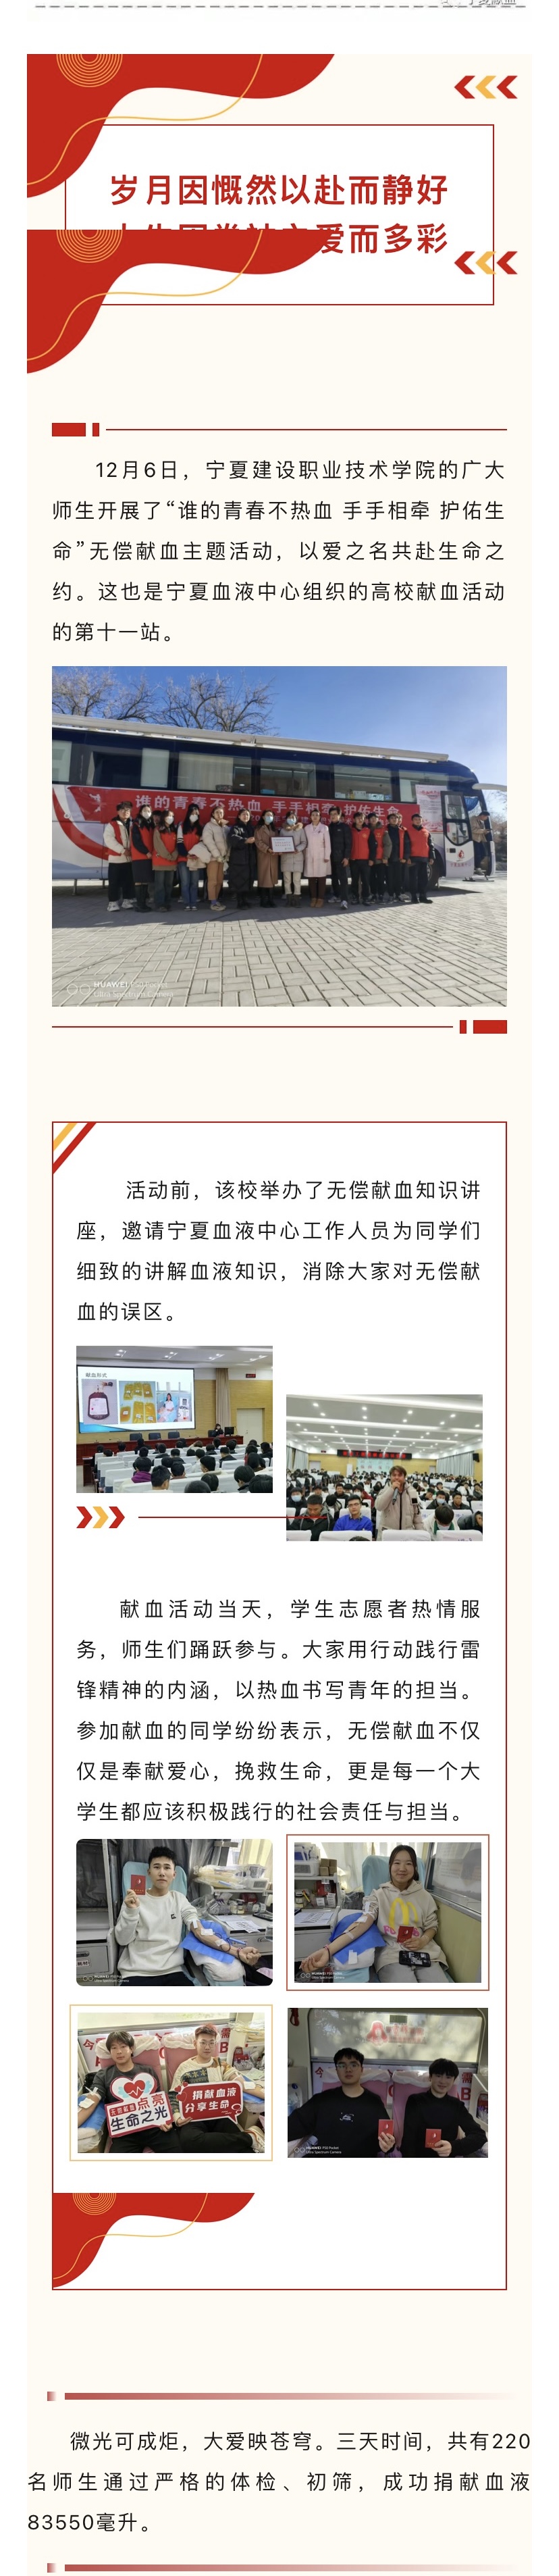 【尚善笃行】高校献血第十一站—宁夏建设 职业技术学院